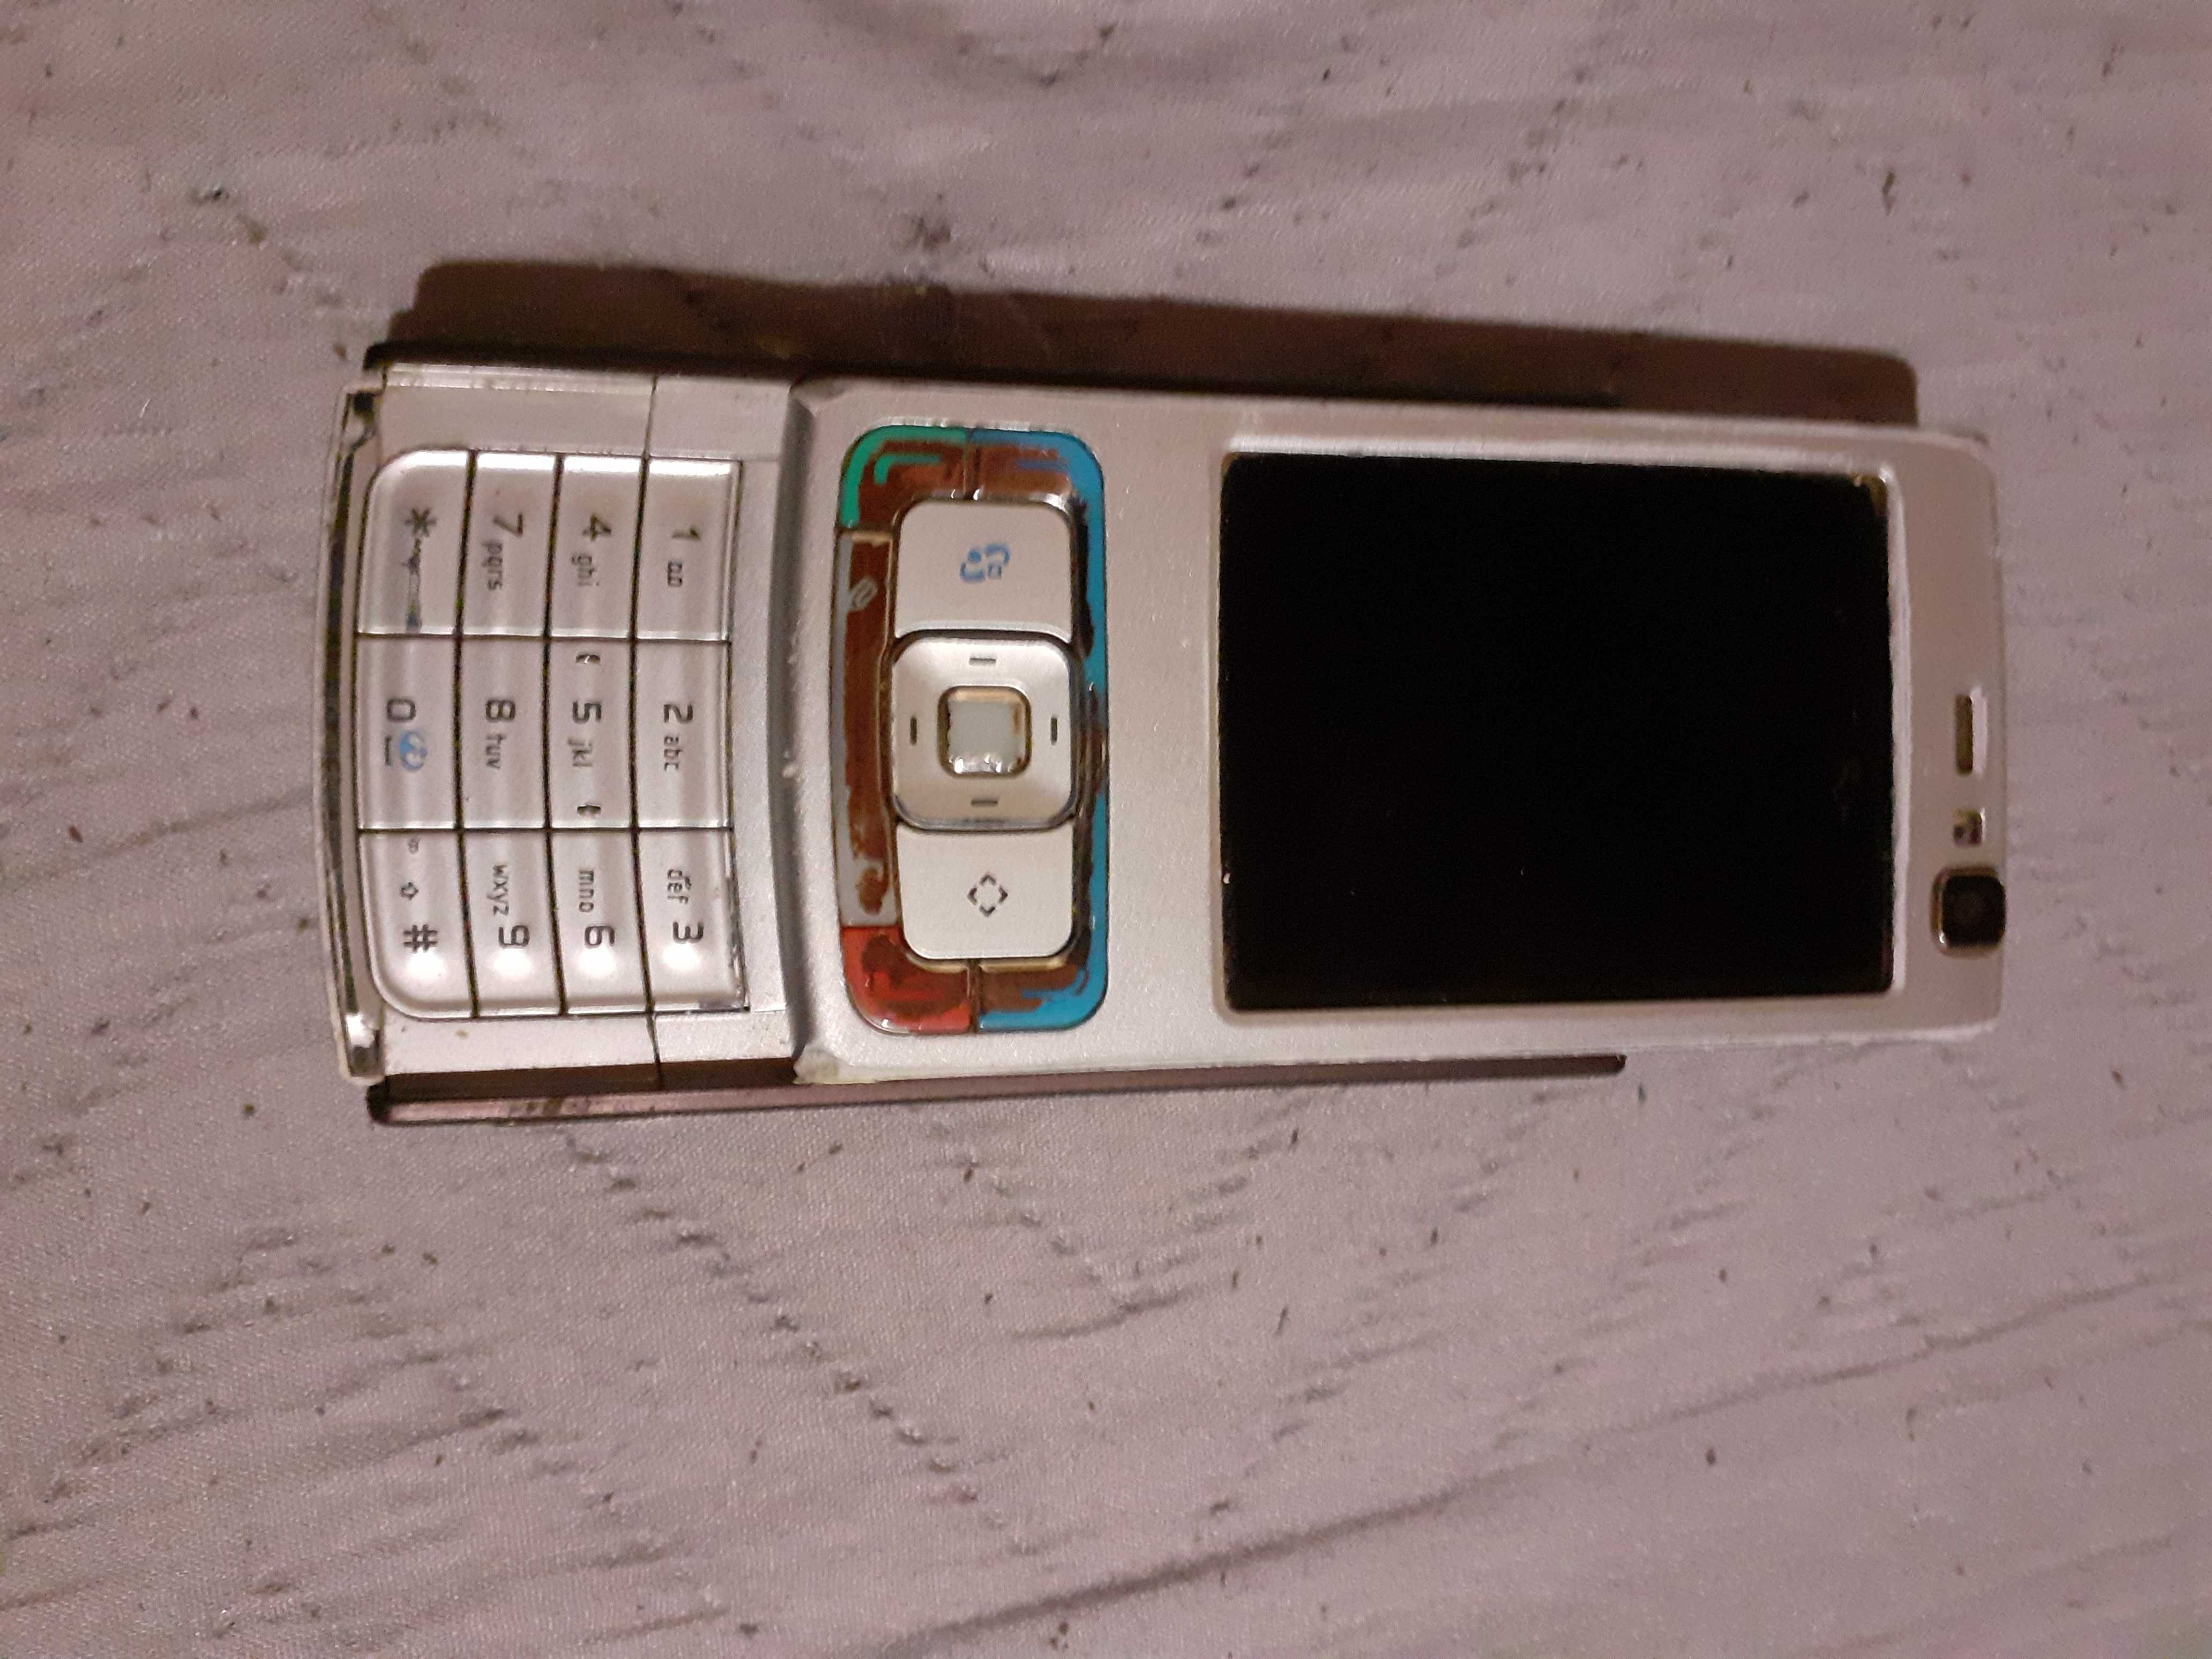 Dwa   Używane Telefony NOKIA -LG Samsung SonyEricsson bez Ładowarek